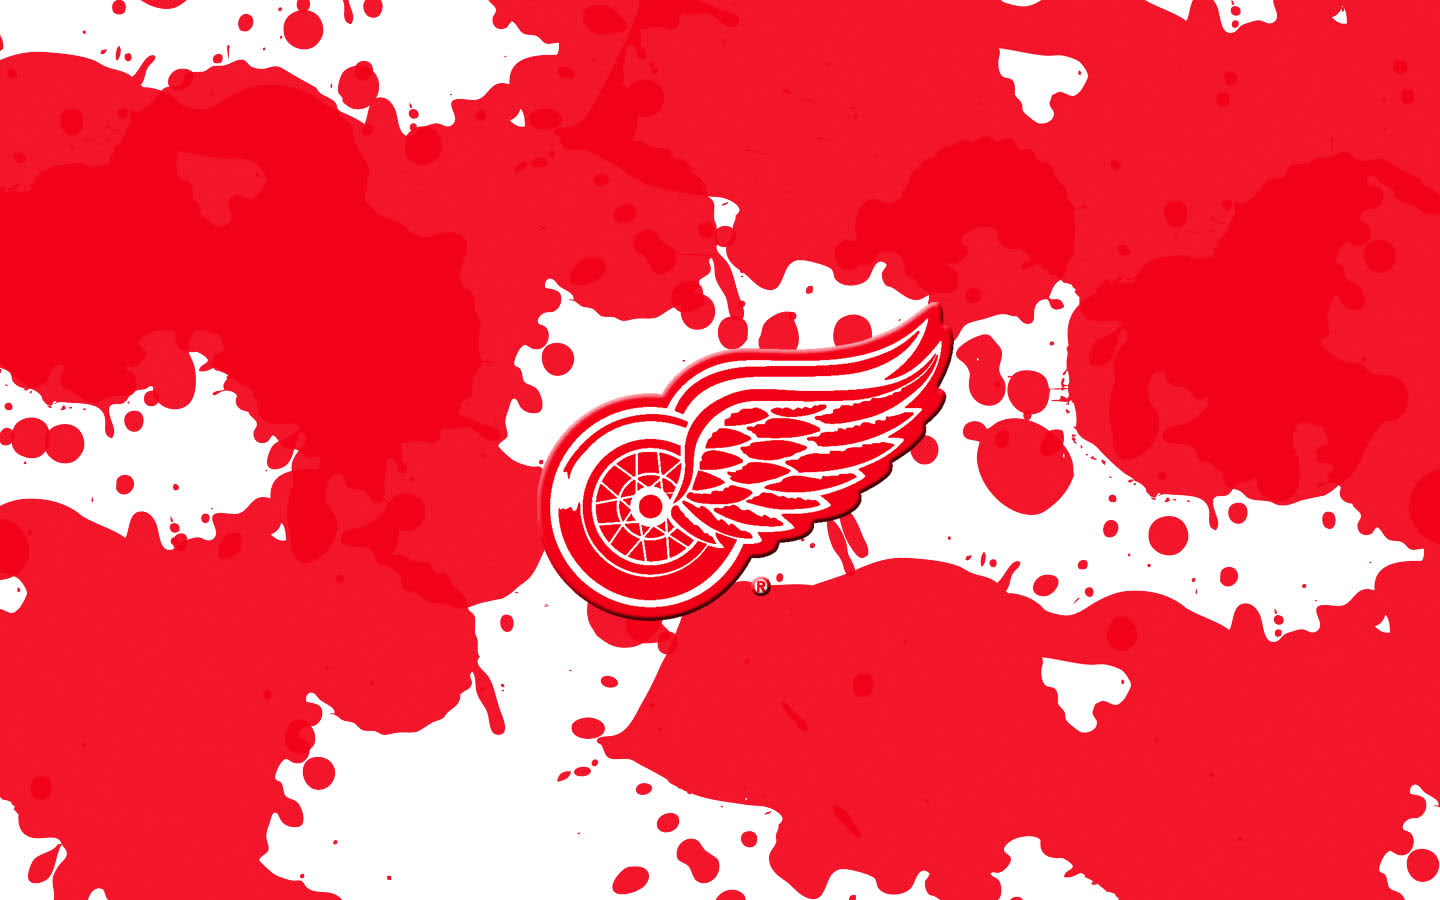 Detroit Red Wings Wallpaper Designs Amp Trivia